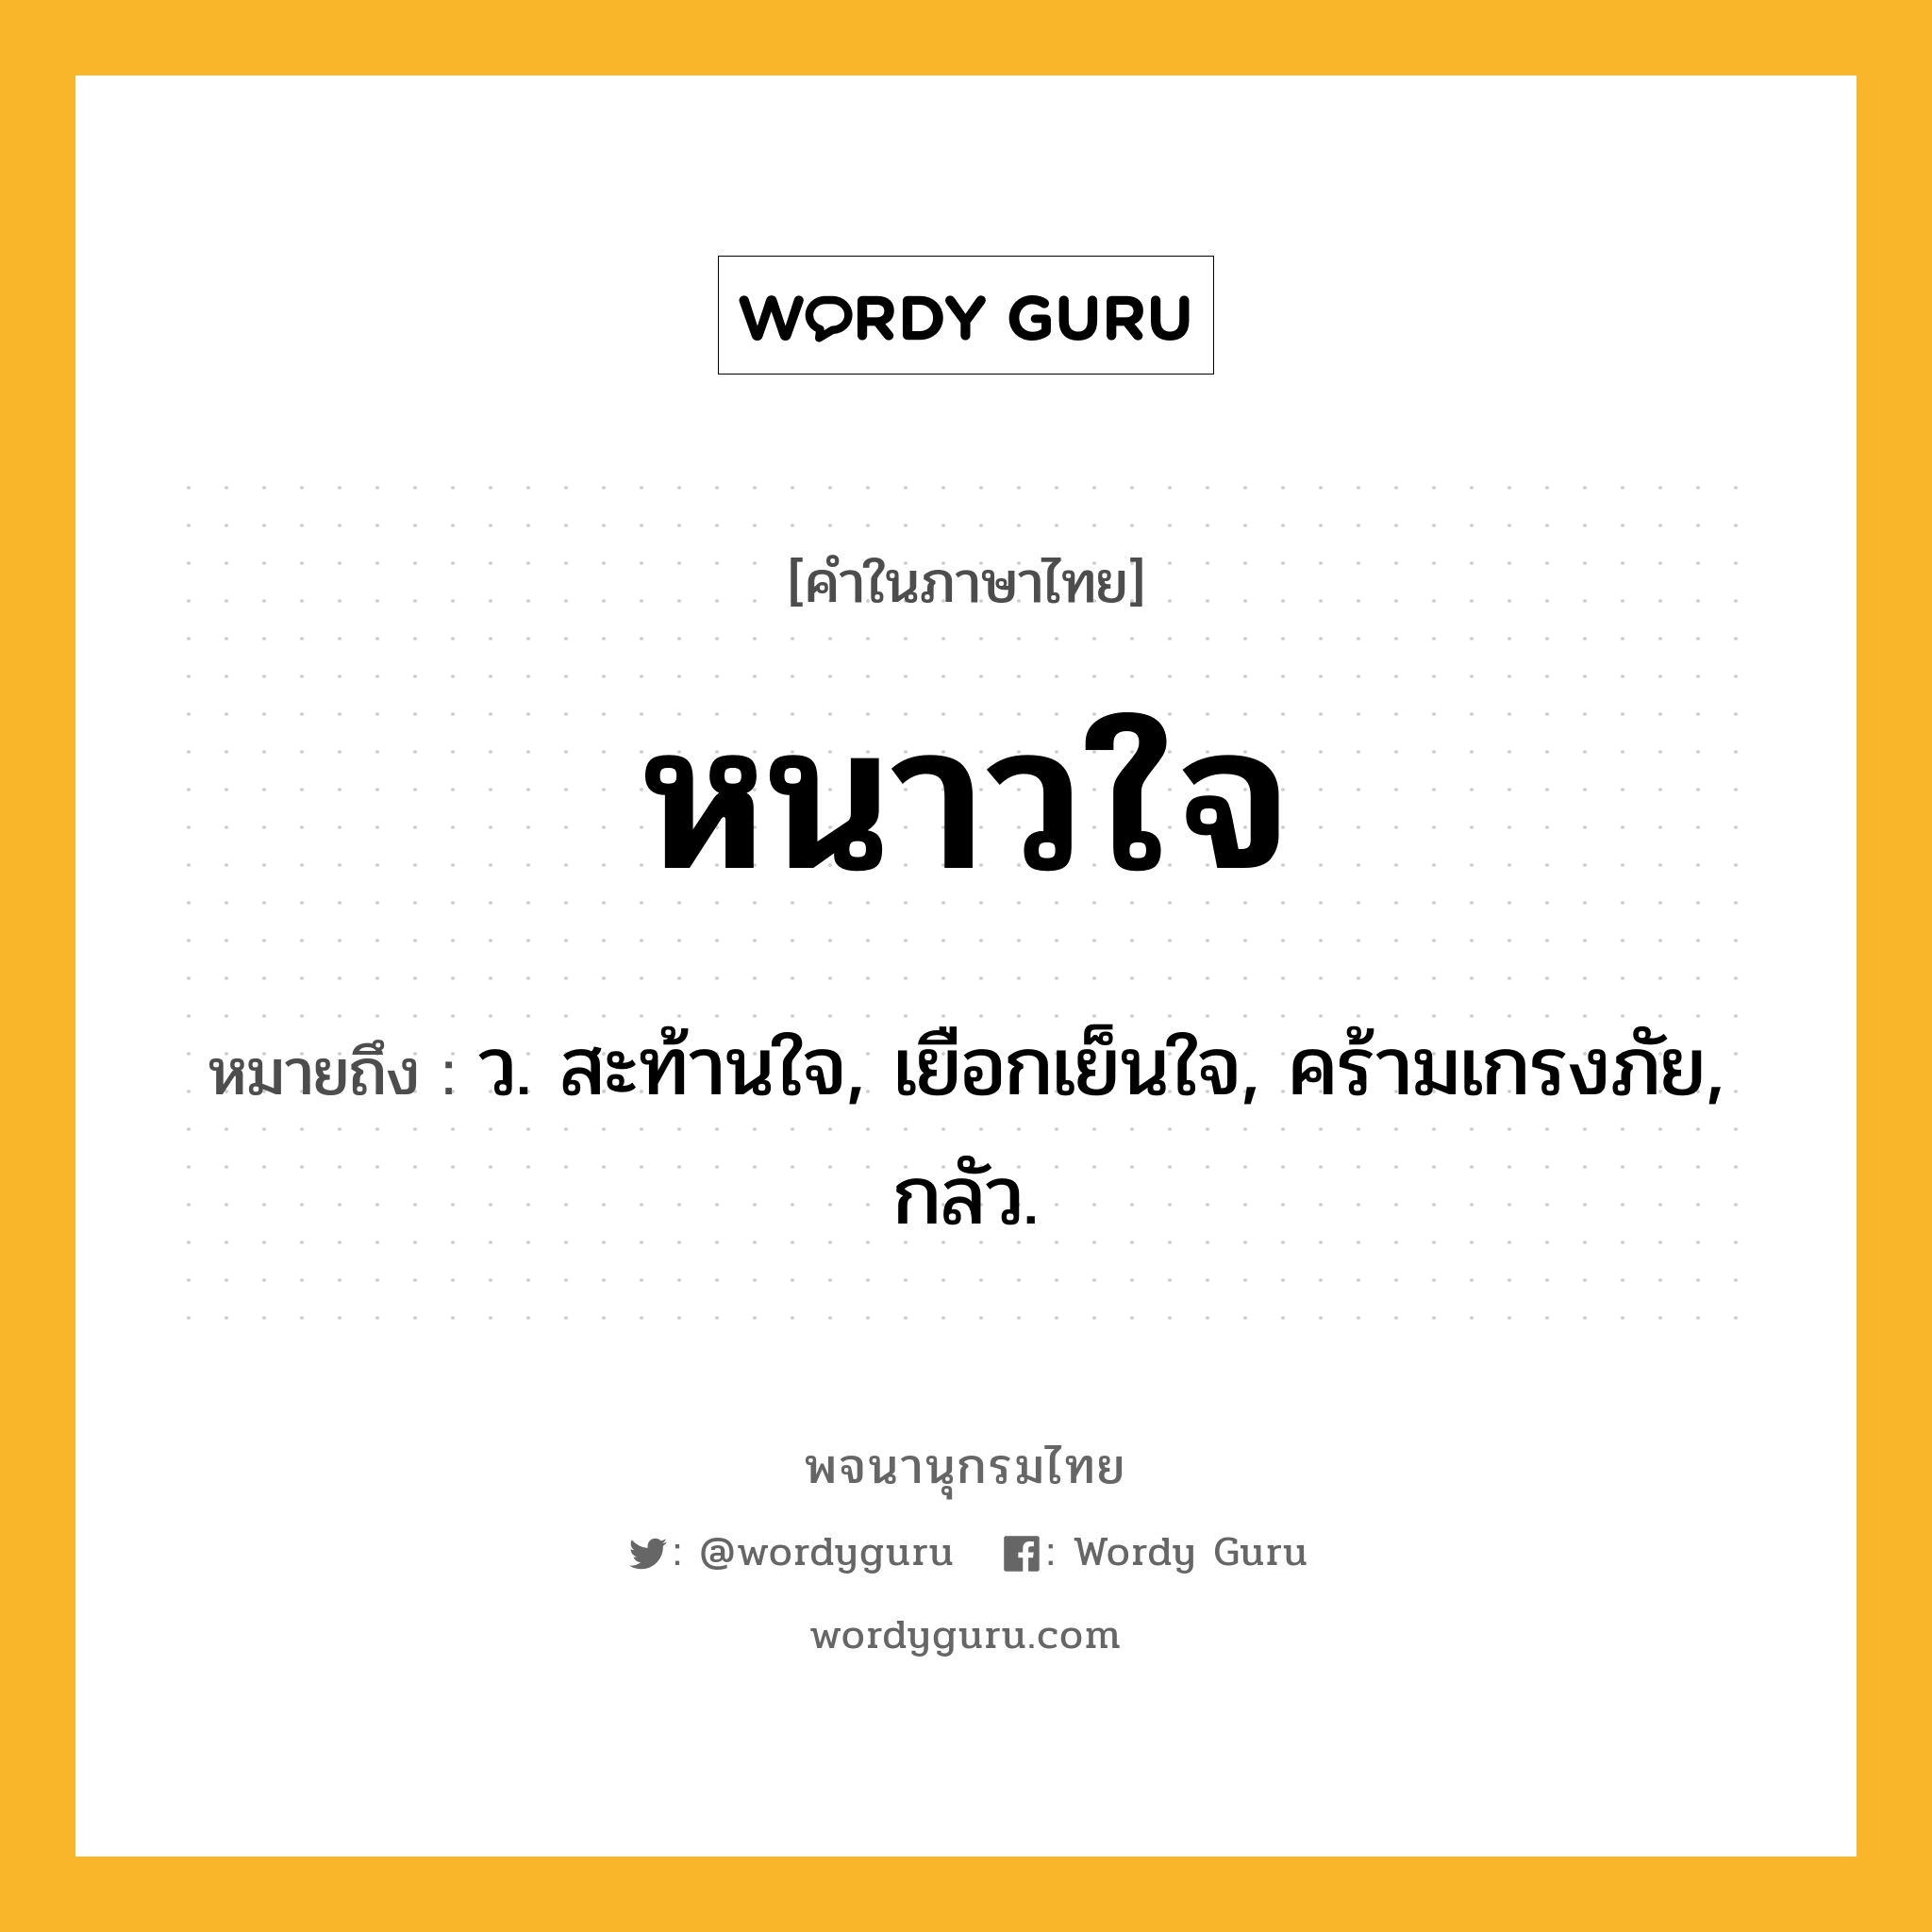 หนาวใจ ความหมาย หมายถึงอะไร?, คำในภาษาไทย หนาวใจ หมายถึง ว. สะท้านใจ, เยือกเย็นใจ, คร้ามเกรงภัย, กลัว.